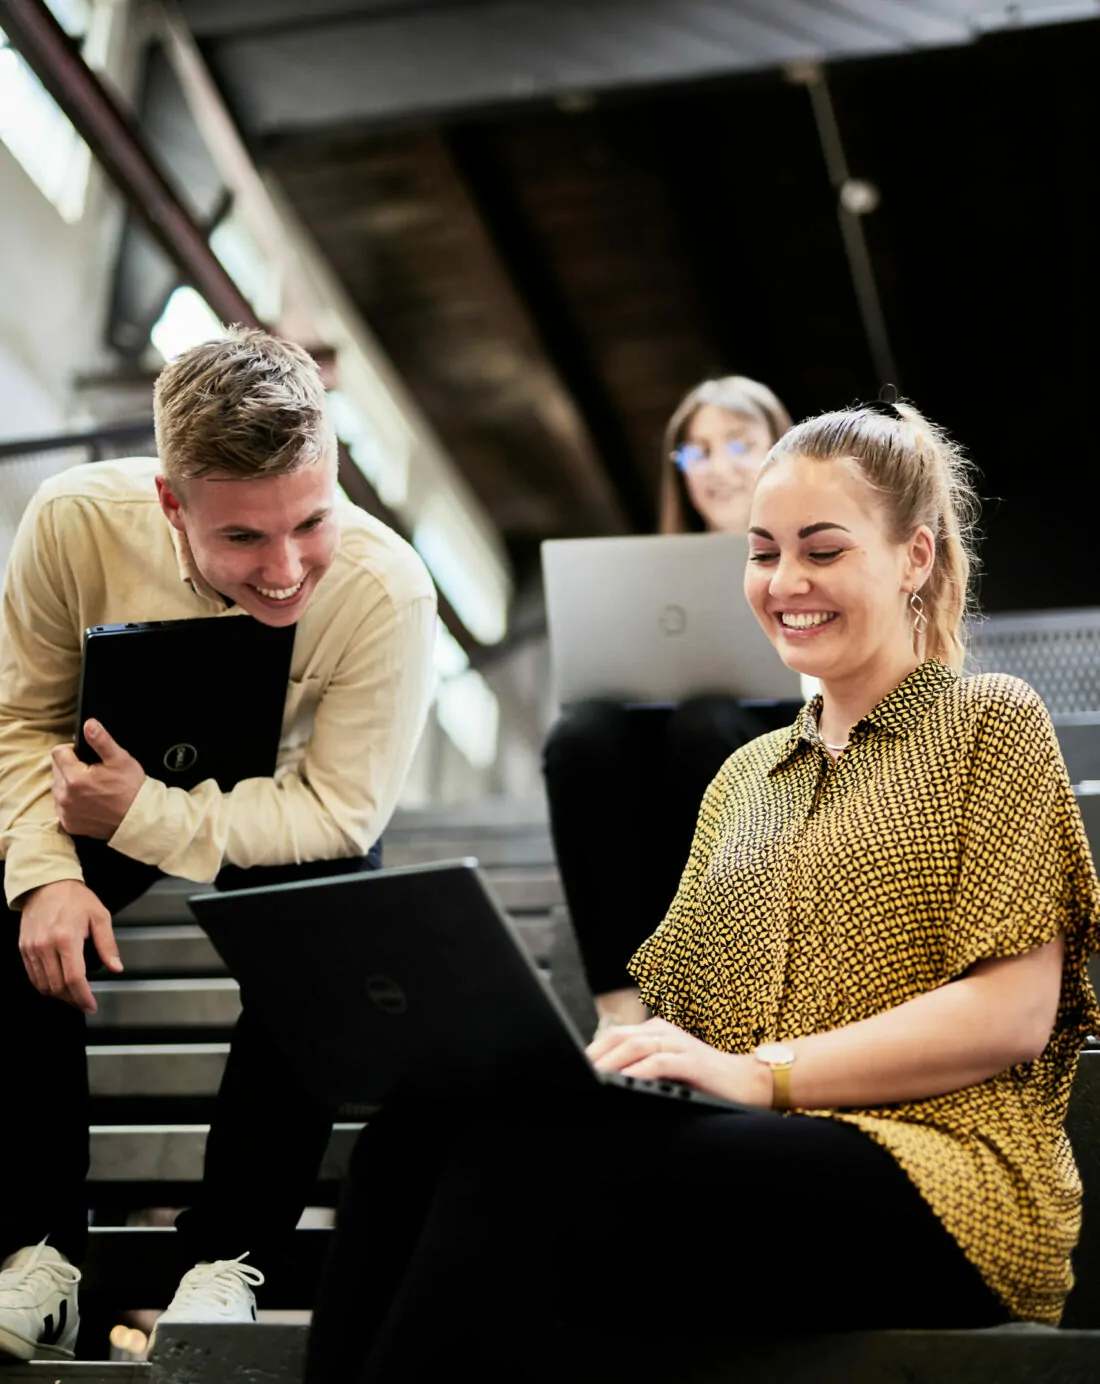 Foto von einer jungen Frau und einem jungen Mann, die auf Stufen sitzen und am Laptop eine Präsentation erarbeiten.